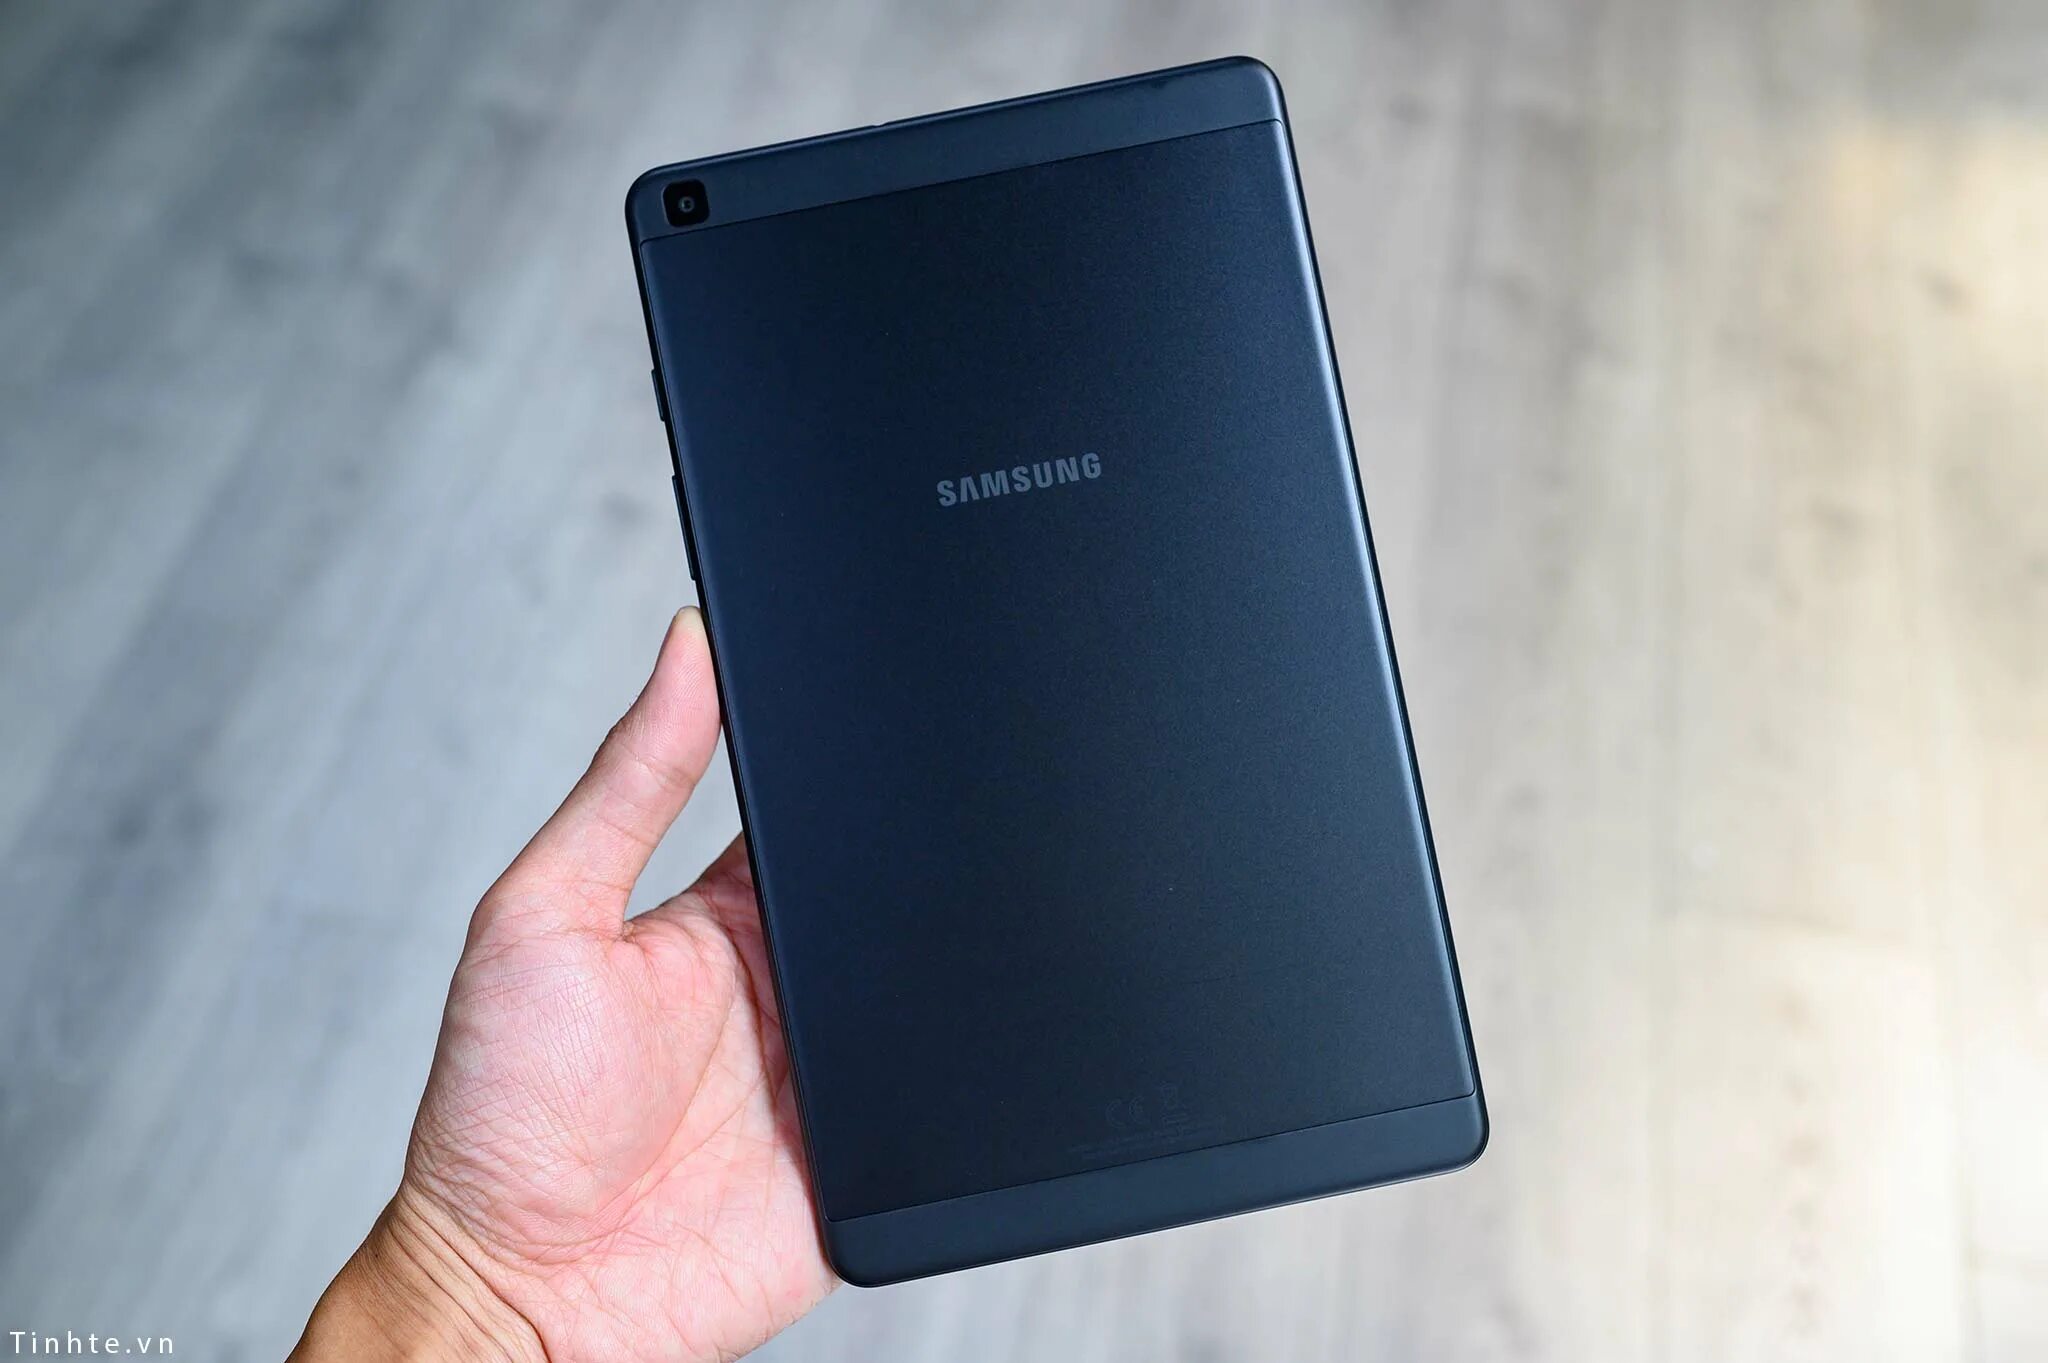 Samsung Galaxy Tab a 8.0 SM-t295 32gb. Samsung Galaxy Tab a8 32gb. Samsung Galaxy Tab a 8.0 2019. Samsung Galaxy Tab a SM-t295. Планшет самсунг 2019